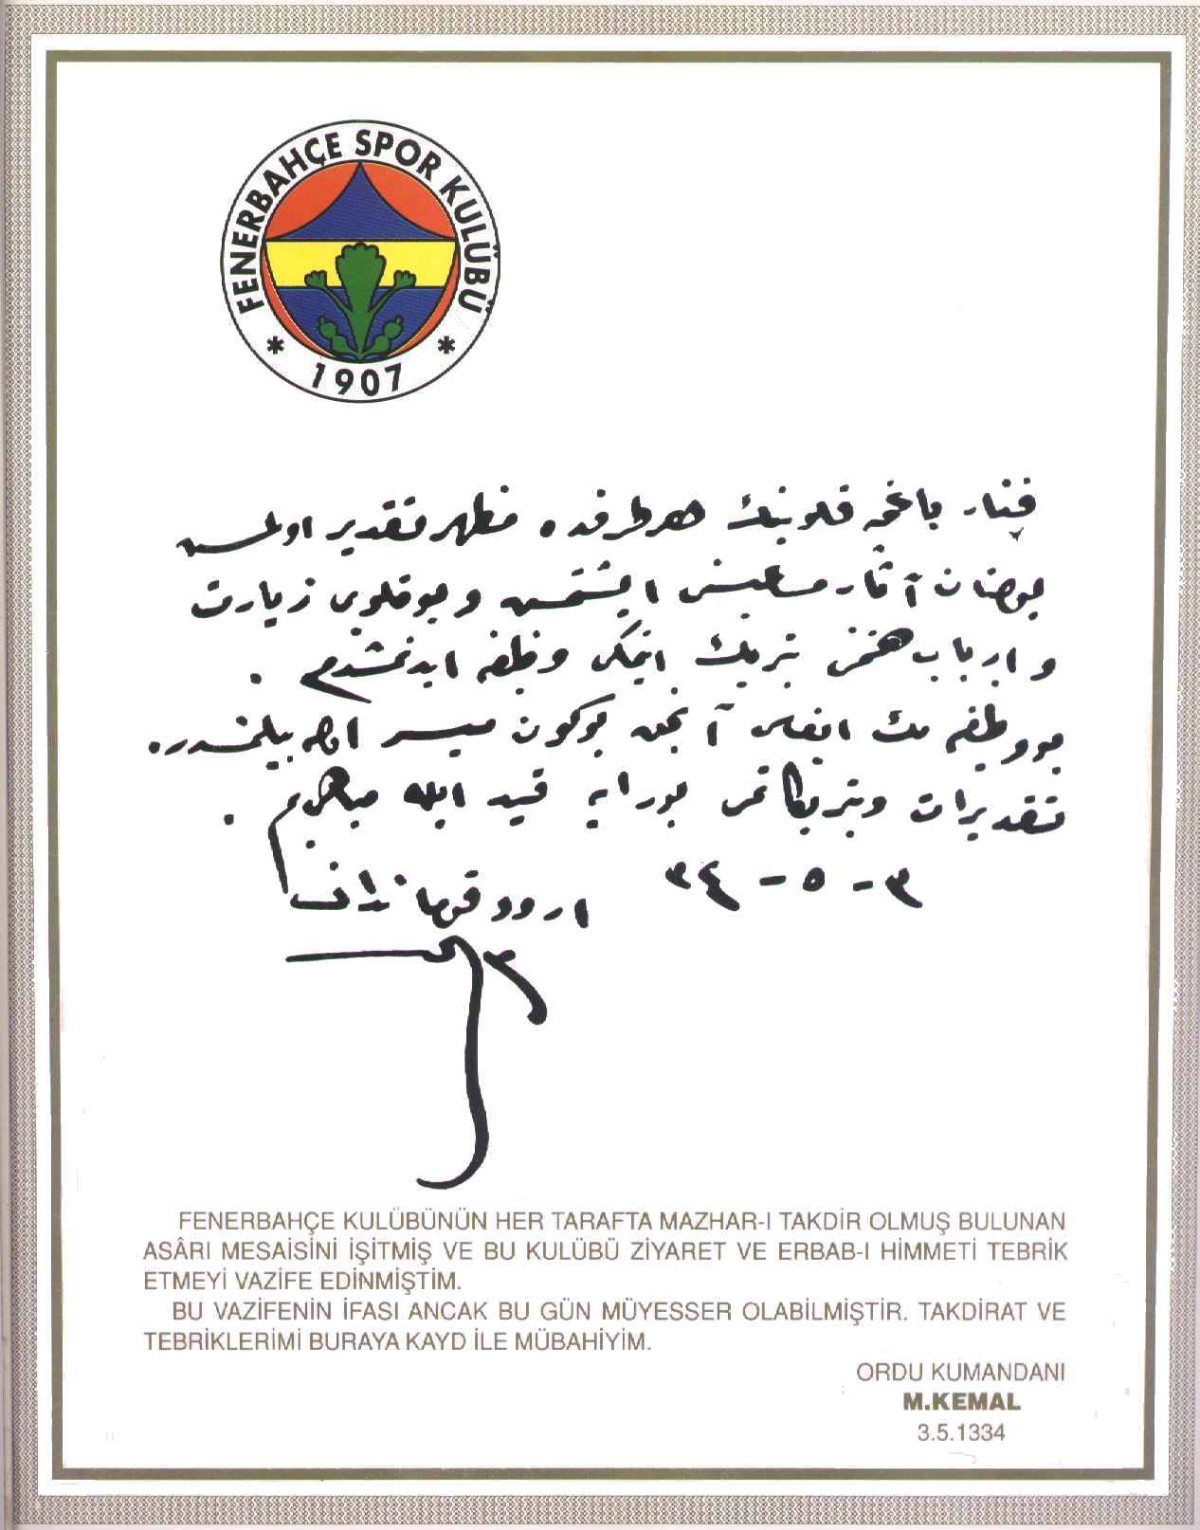 Atatürk Fenerbahçe kulübü ziyareti 